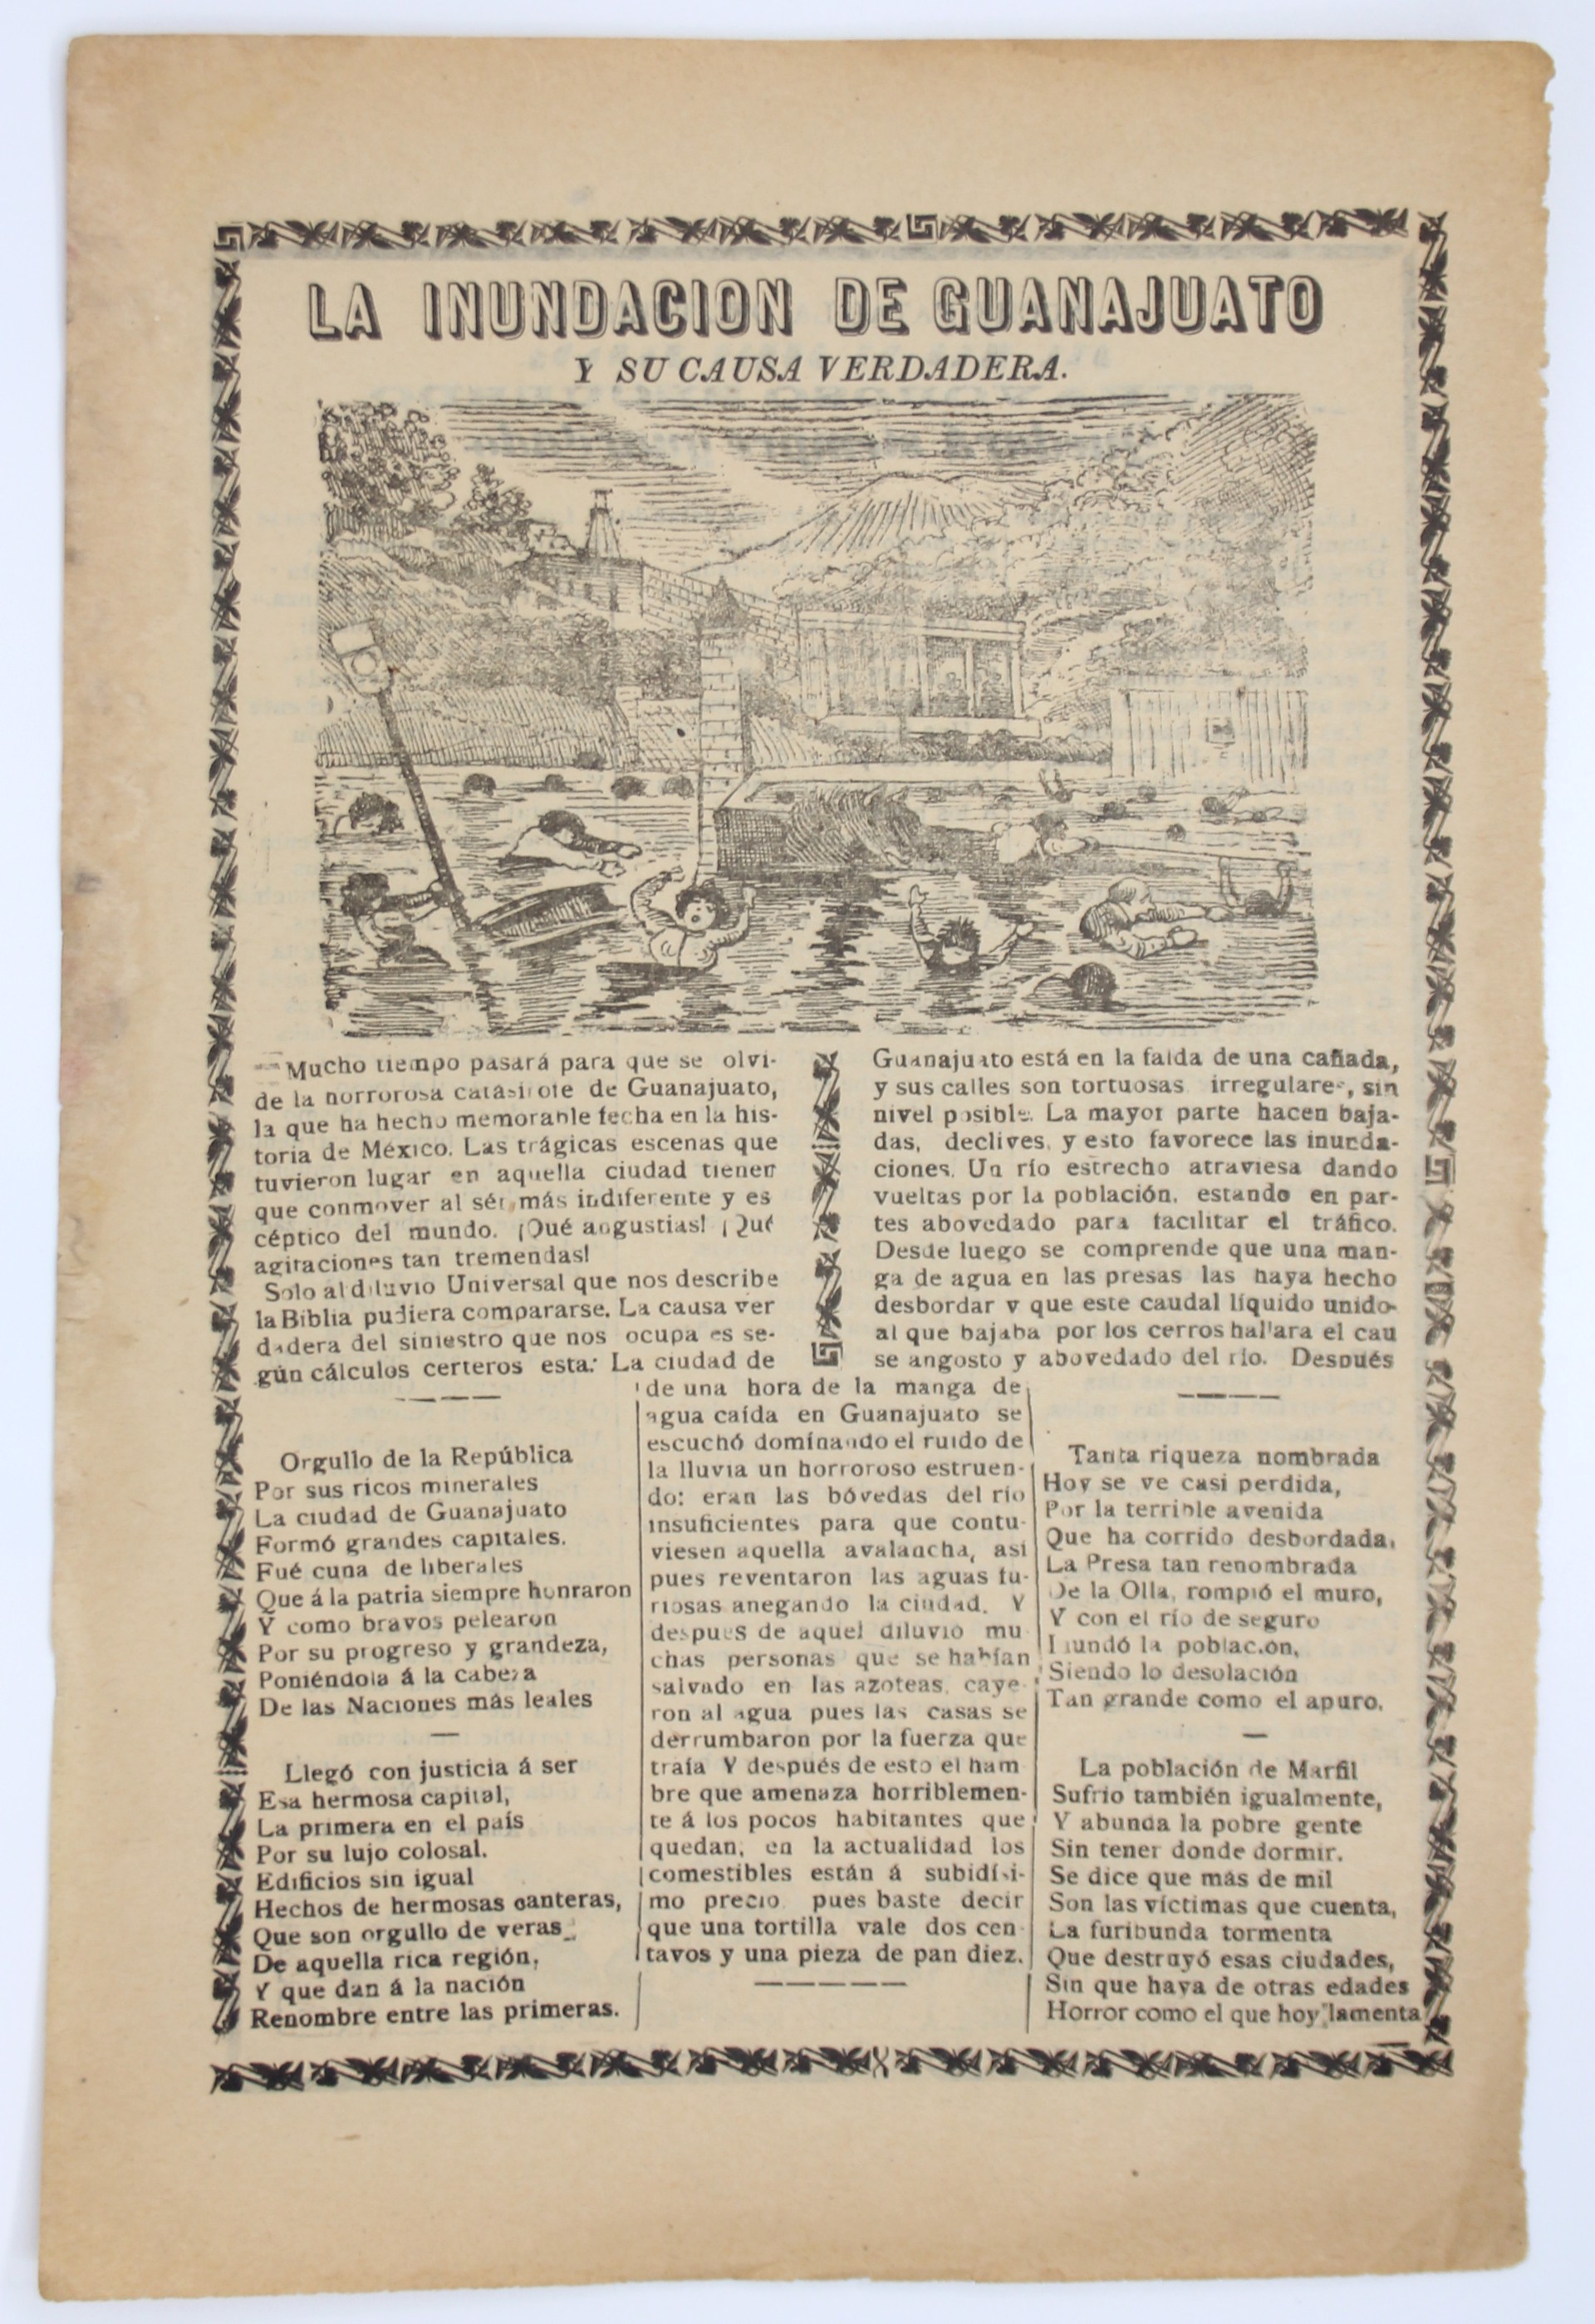 La Inundacion de Guanajuato by José Guadalupe Posada (1852 - 1913)